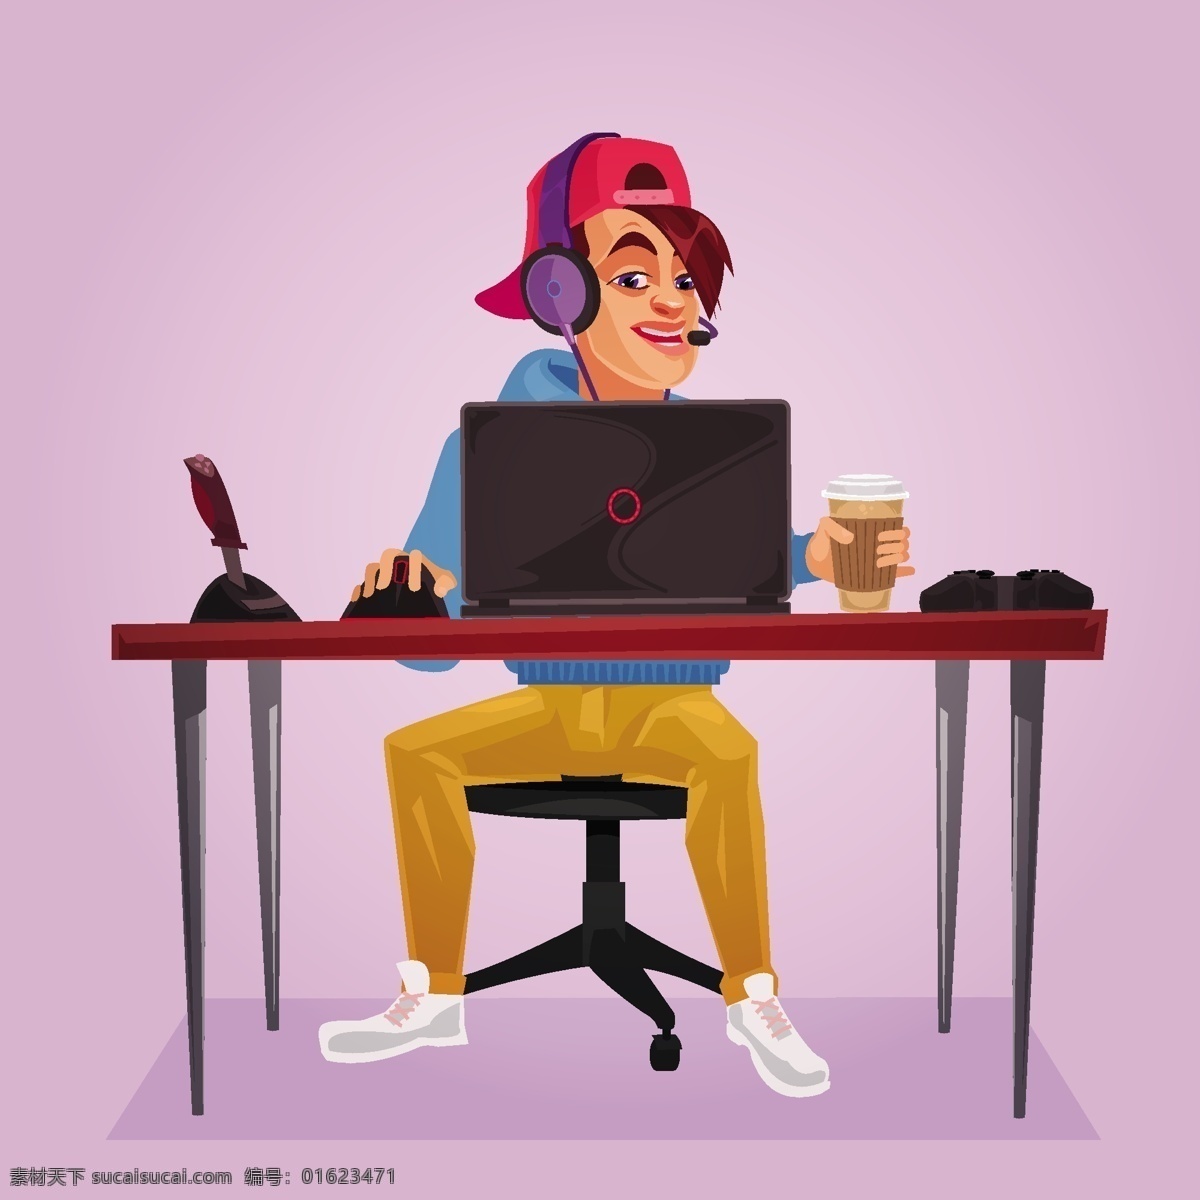 向量 一个 十几 岁 孩子 坐在 笔记本 插图 咖啡 电脑 人 人物 卡通 时髦 脸的颜色 笔记本电脑 网络 游戏 个人 麦克风 平 桌子 椅子 帽子 鼠标